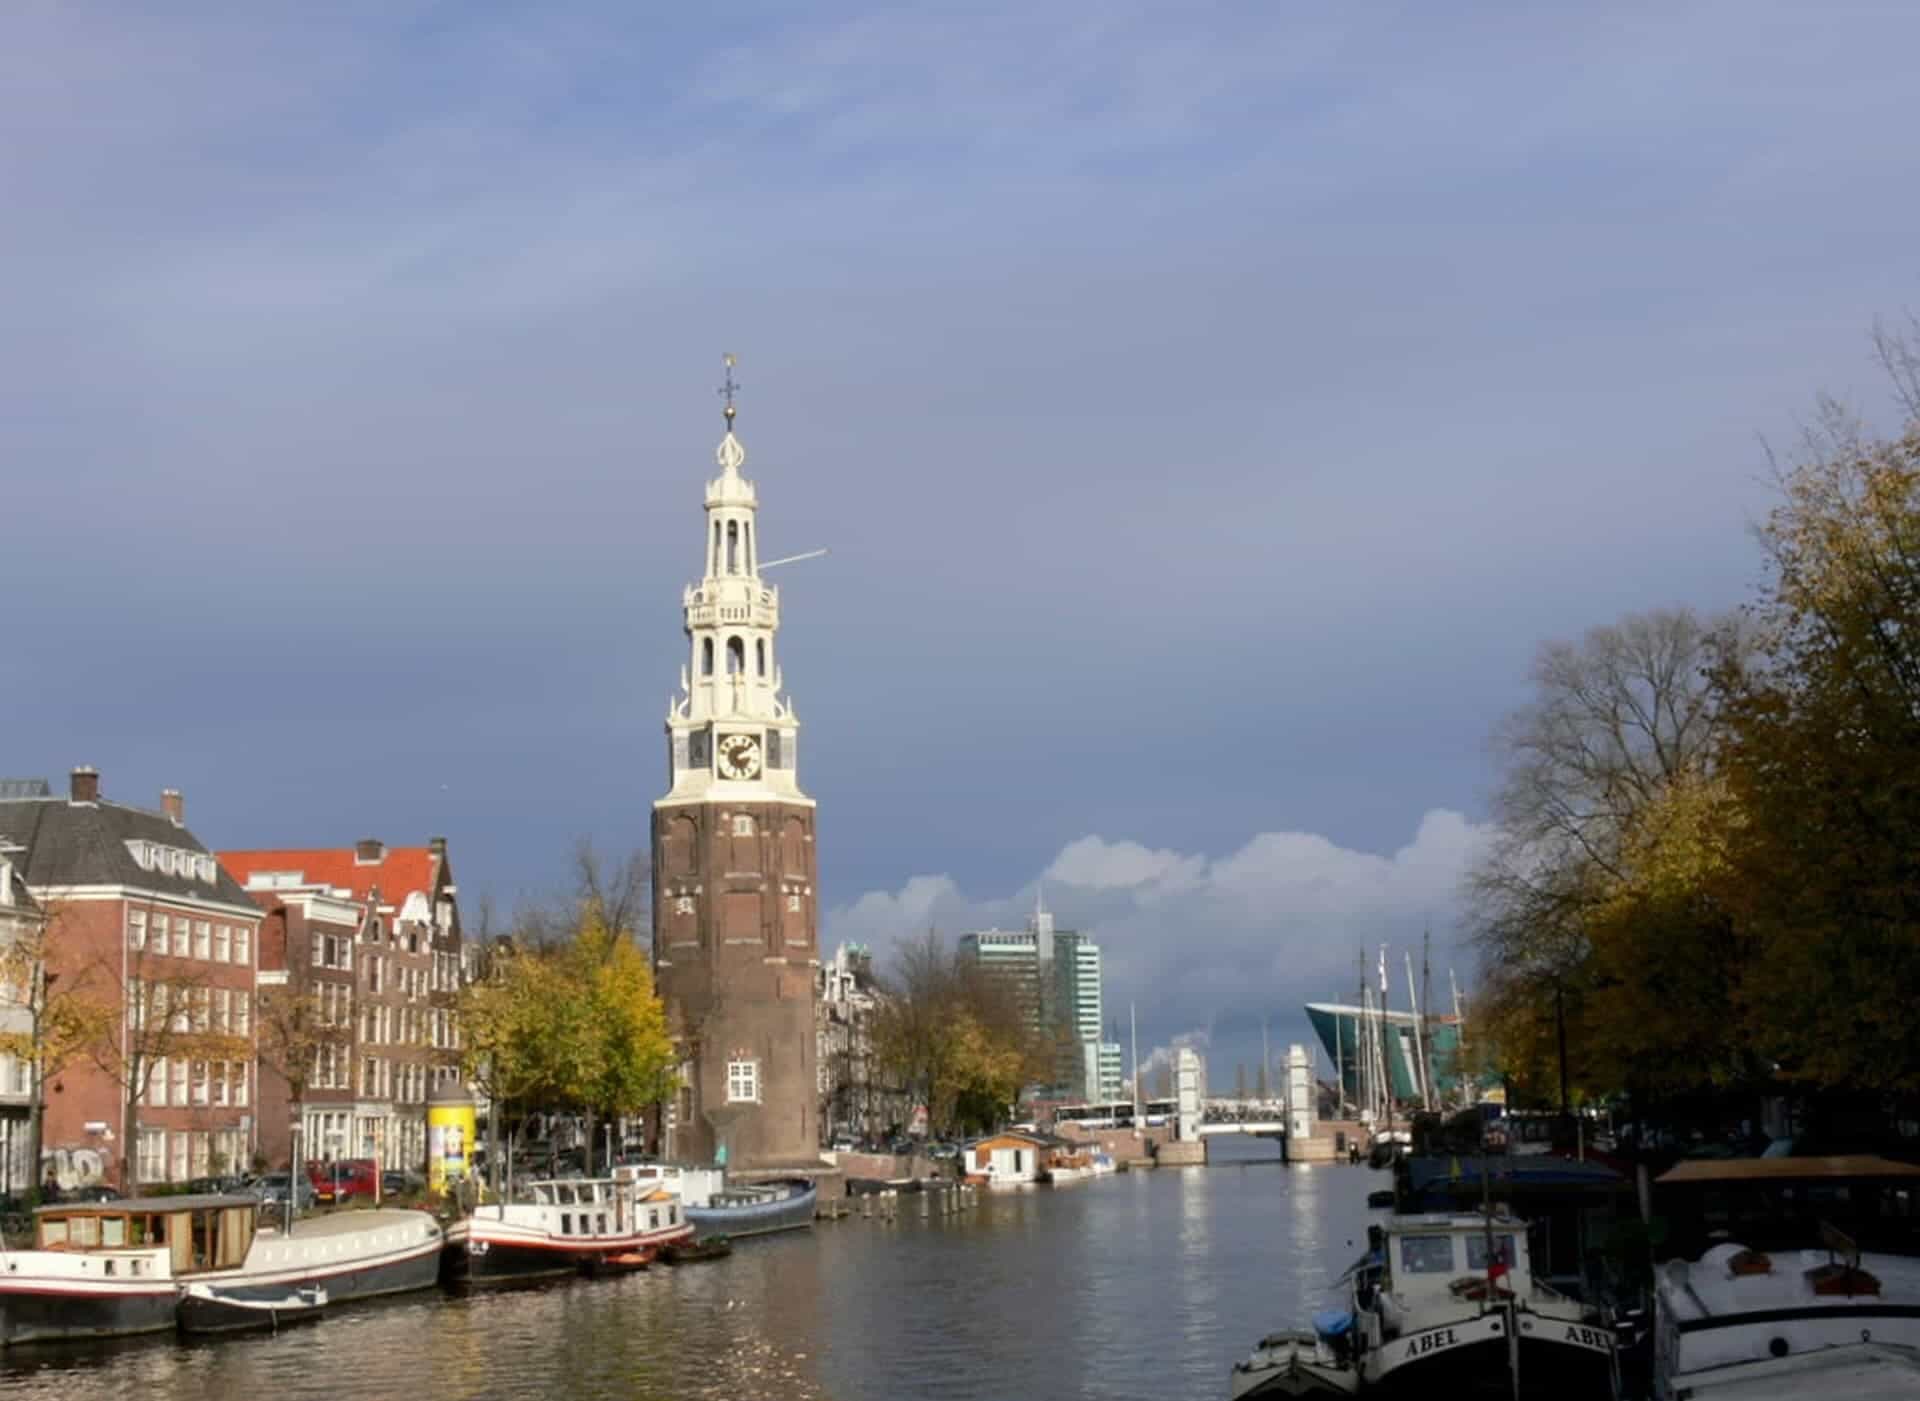 Amsterdam Montelbaanstoren - 2019